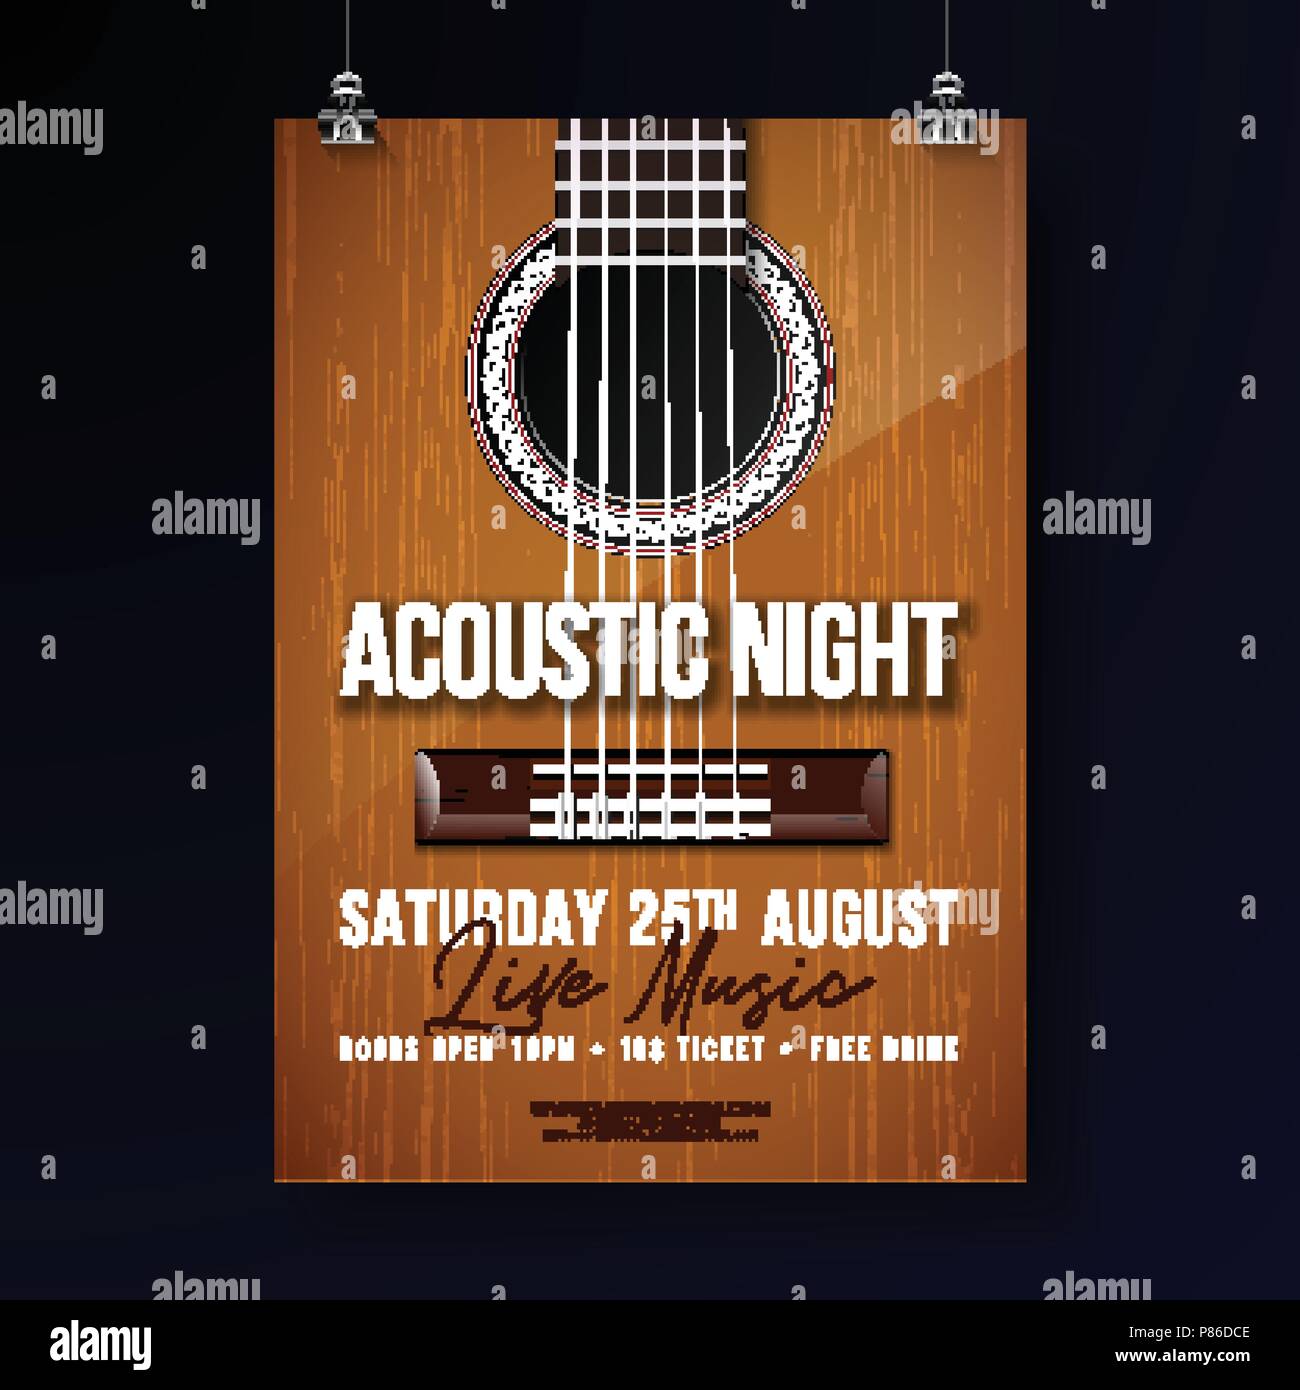 Acoustic Night Party Flyer Design mit String und Schriftzug auf der Gitarre Hintergrund. Vektor Live Musik Abbildung: Vorlage für die Einladung, Plakat, Werbemittel, Banner, Broschüren, oder Grußkarte. Stock Vektor